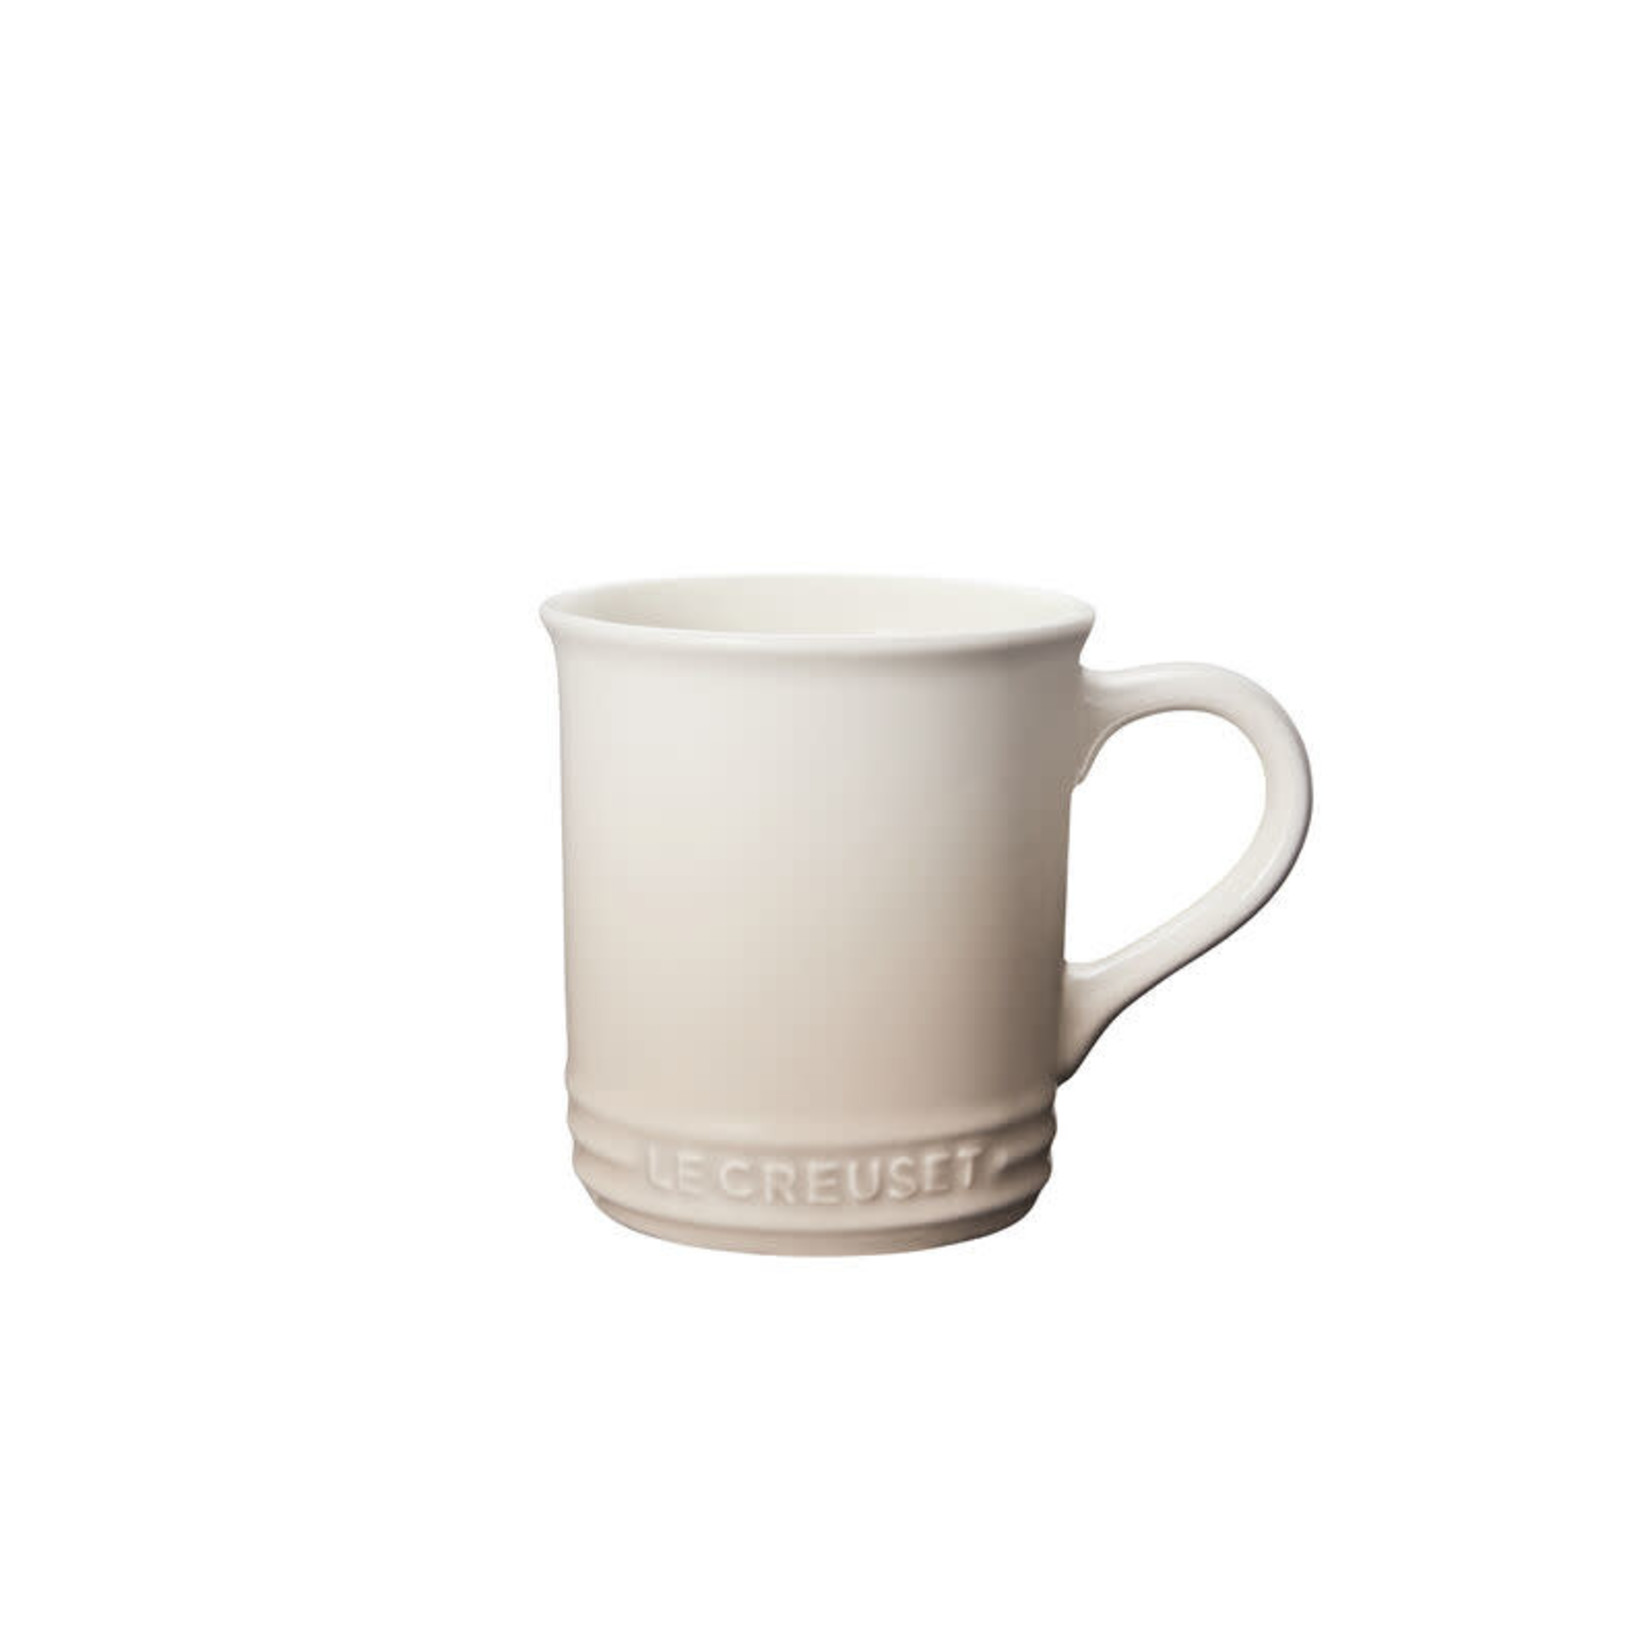 LE CREUSET LE CREUSET Classic Mug S/4